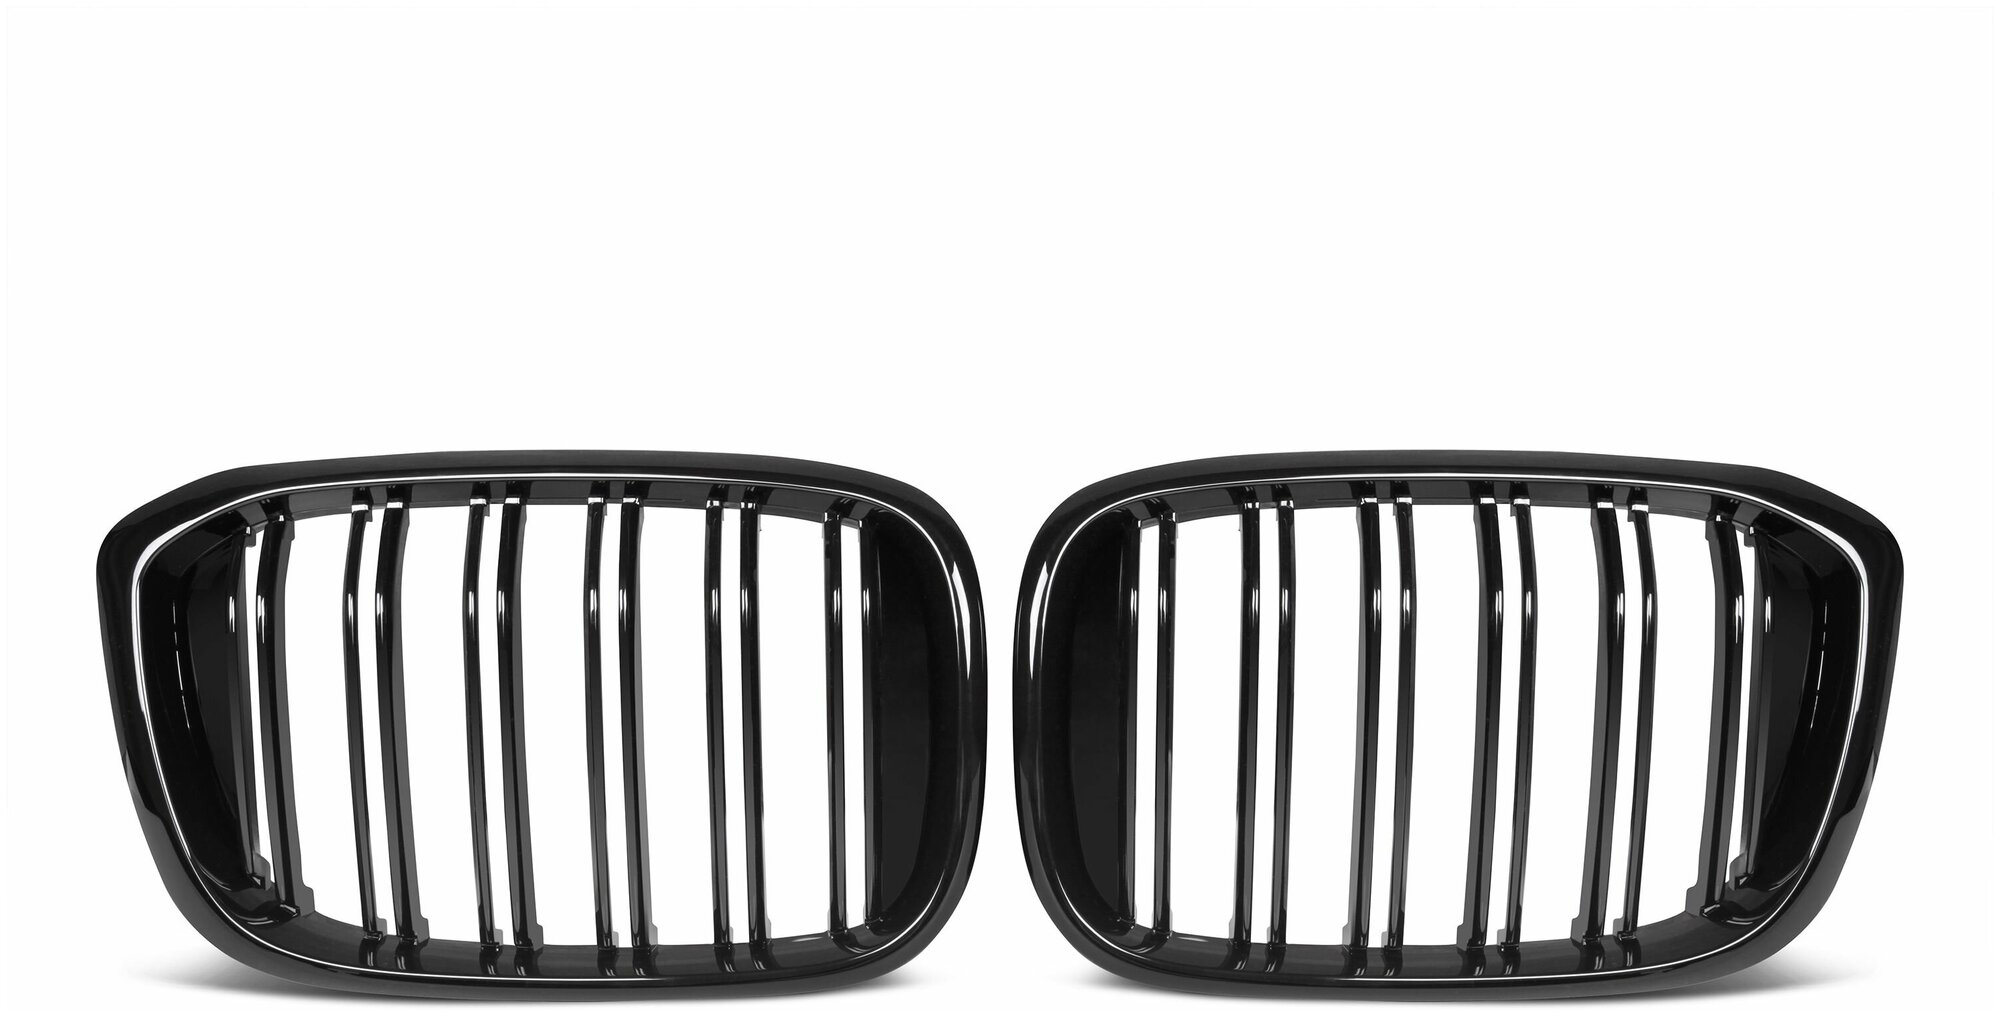 Решетки радиатора BMW X3 G01 X4 G02 дорестайлинг 2019-2021 ноздри сдвоенные черные глянцевые горбатые X3M X4M стиль RGBMX3G01X2GB